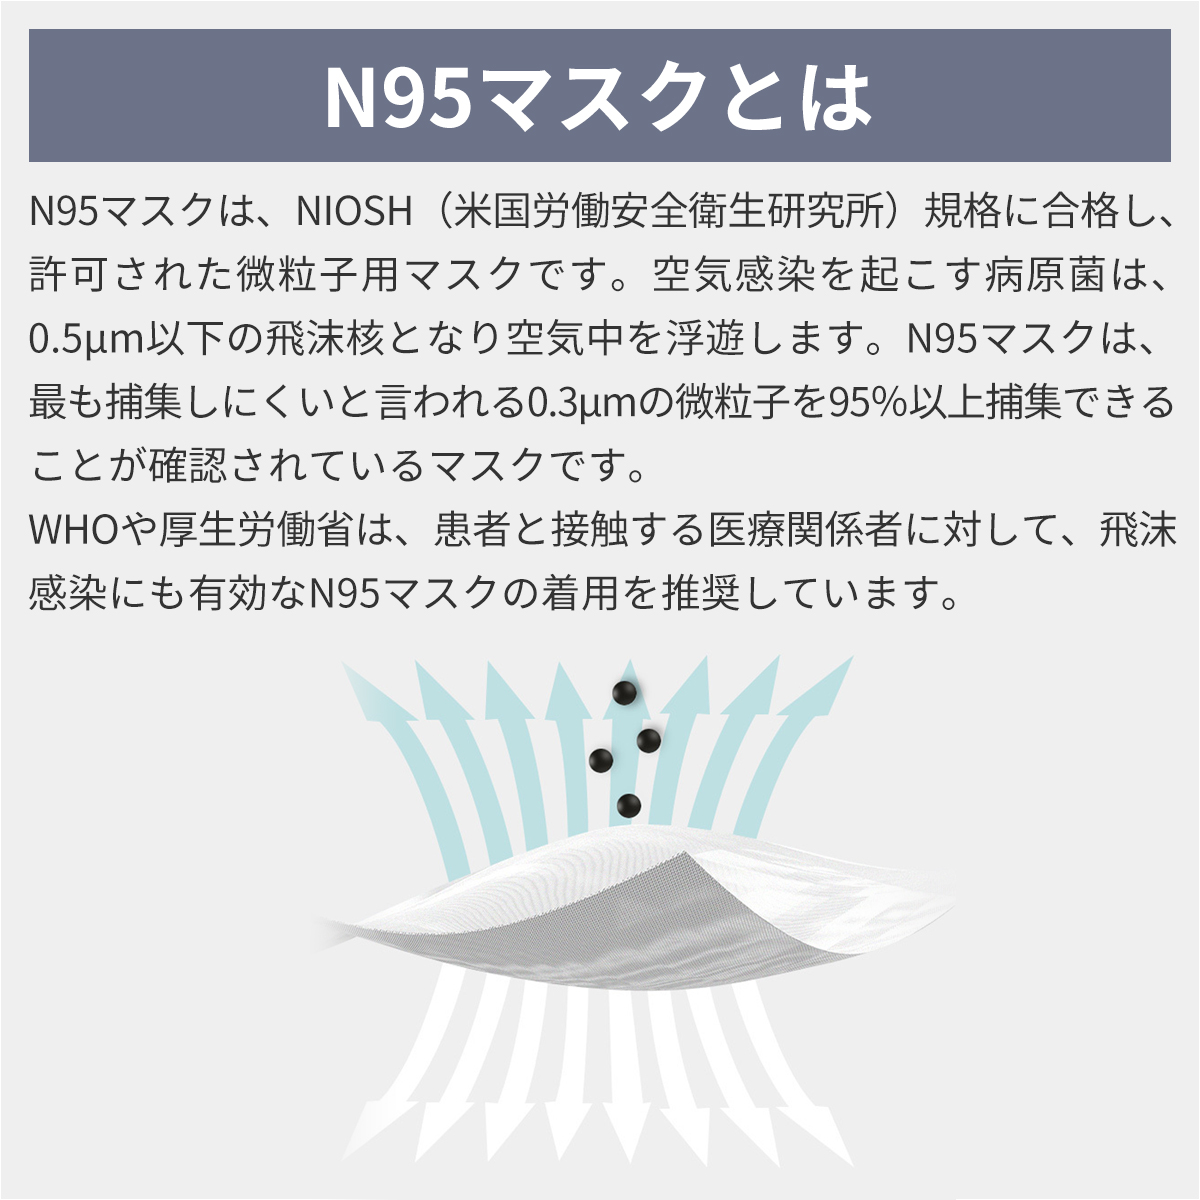  RABLISS N95 マスク カップ型 20枚入×3